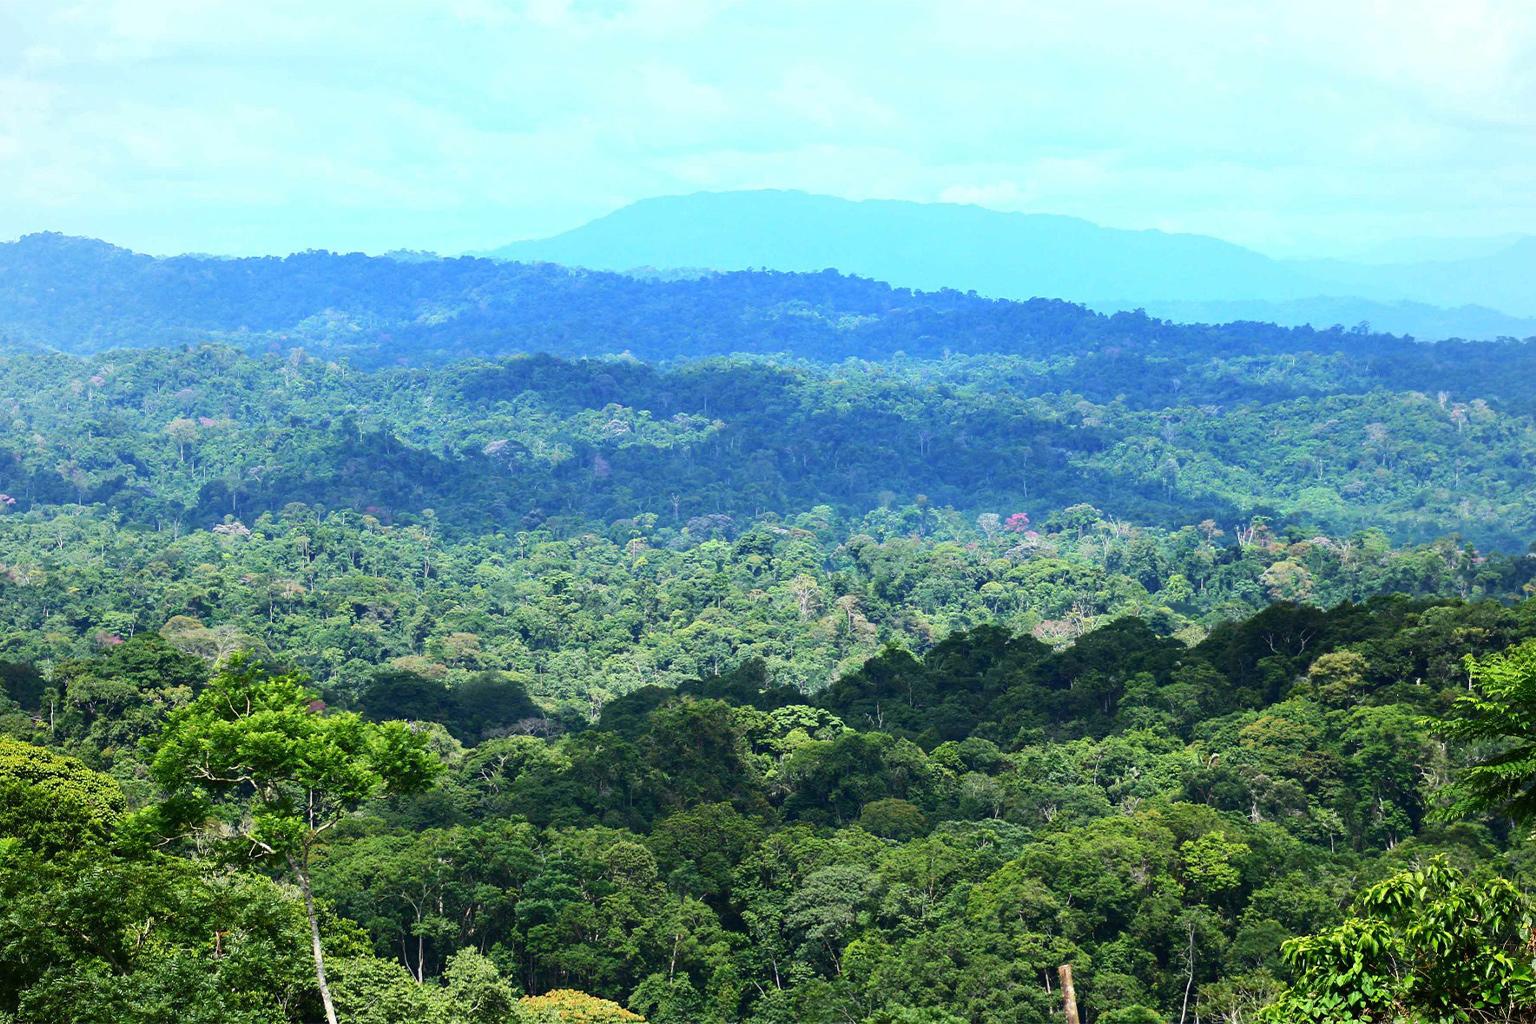 $!Parque Nacional Paramillo en Colombia. Aunque el cultivo de coca en 12 zonas protegidas en 2019 representa solo una parte de los cultivos totales del país, la penetración en los parques nacionales amenaza la biodiversidad y expone zonas conservadas a una mayor explotación.